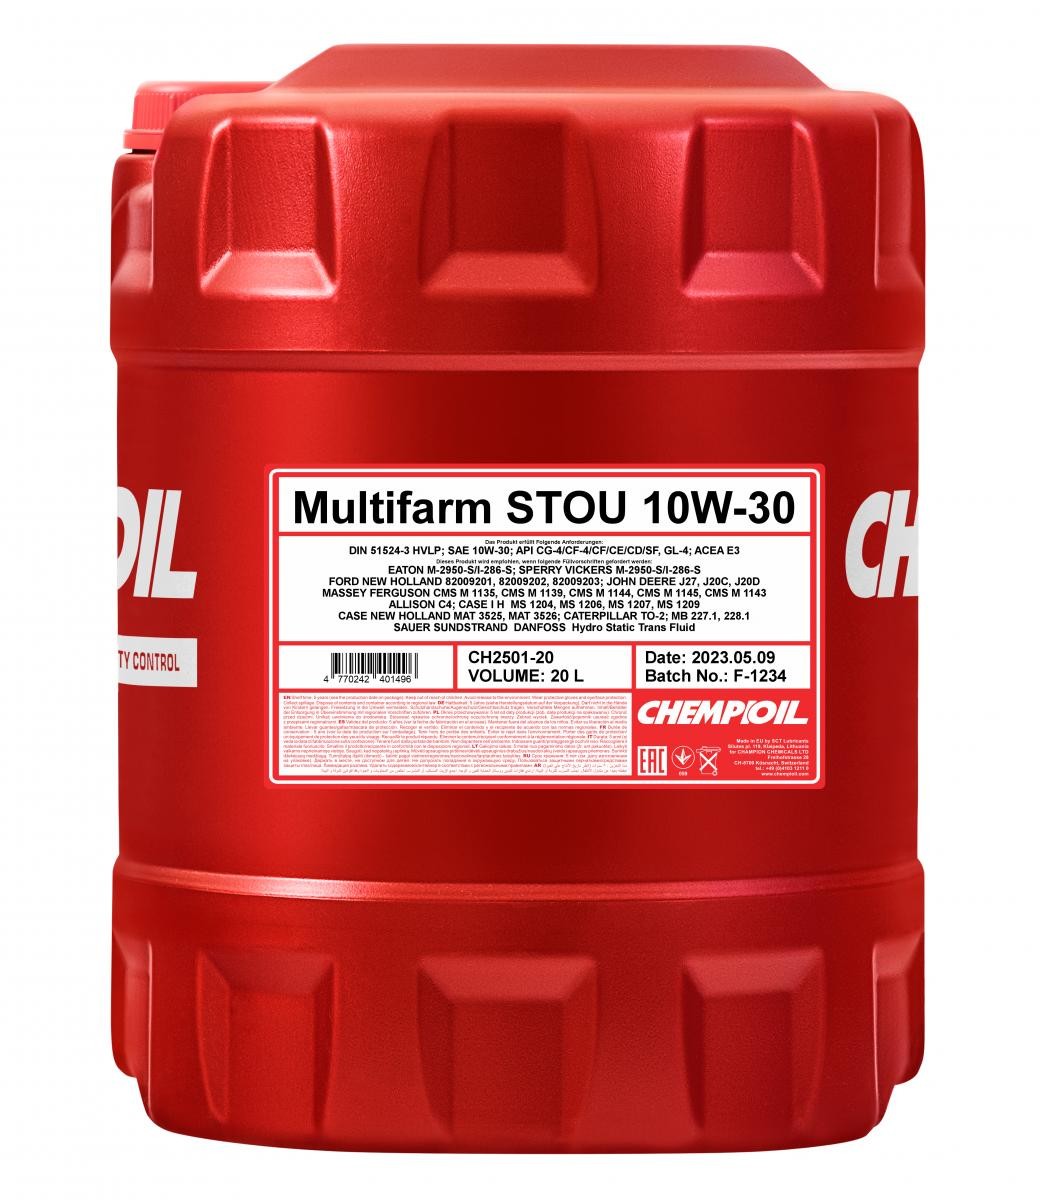 Car oil MAT 3525 CHEMPIOIL - CH2501-20 Multifarm, STOU